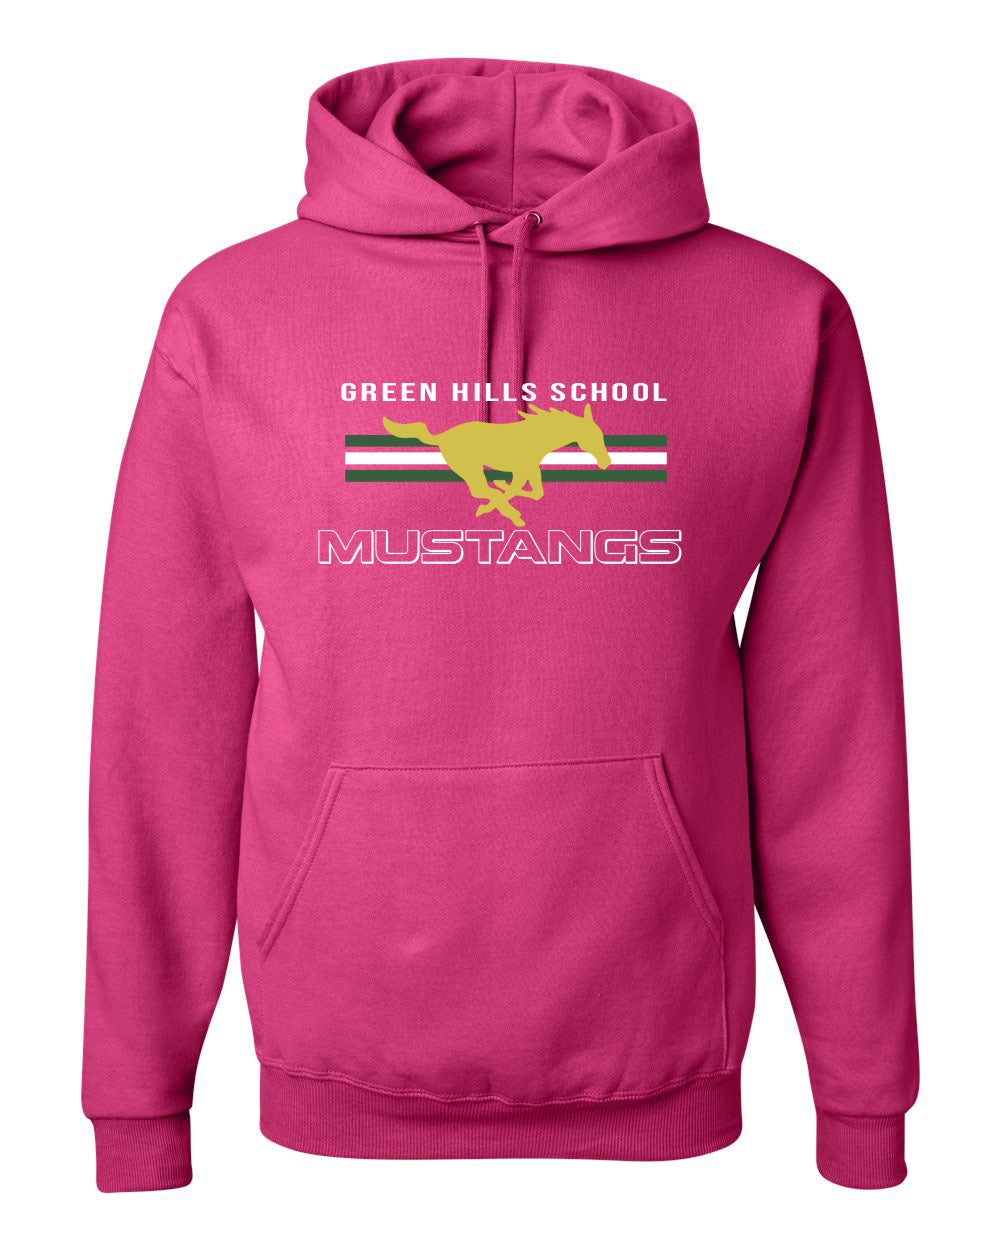 Green Hills Design 3 Hooded Sweatshirt, pink